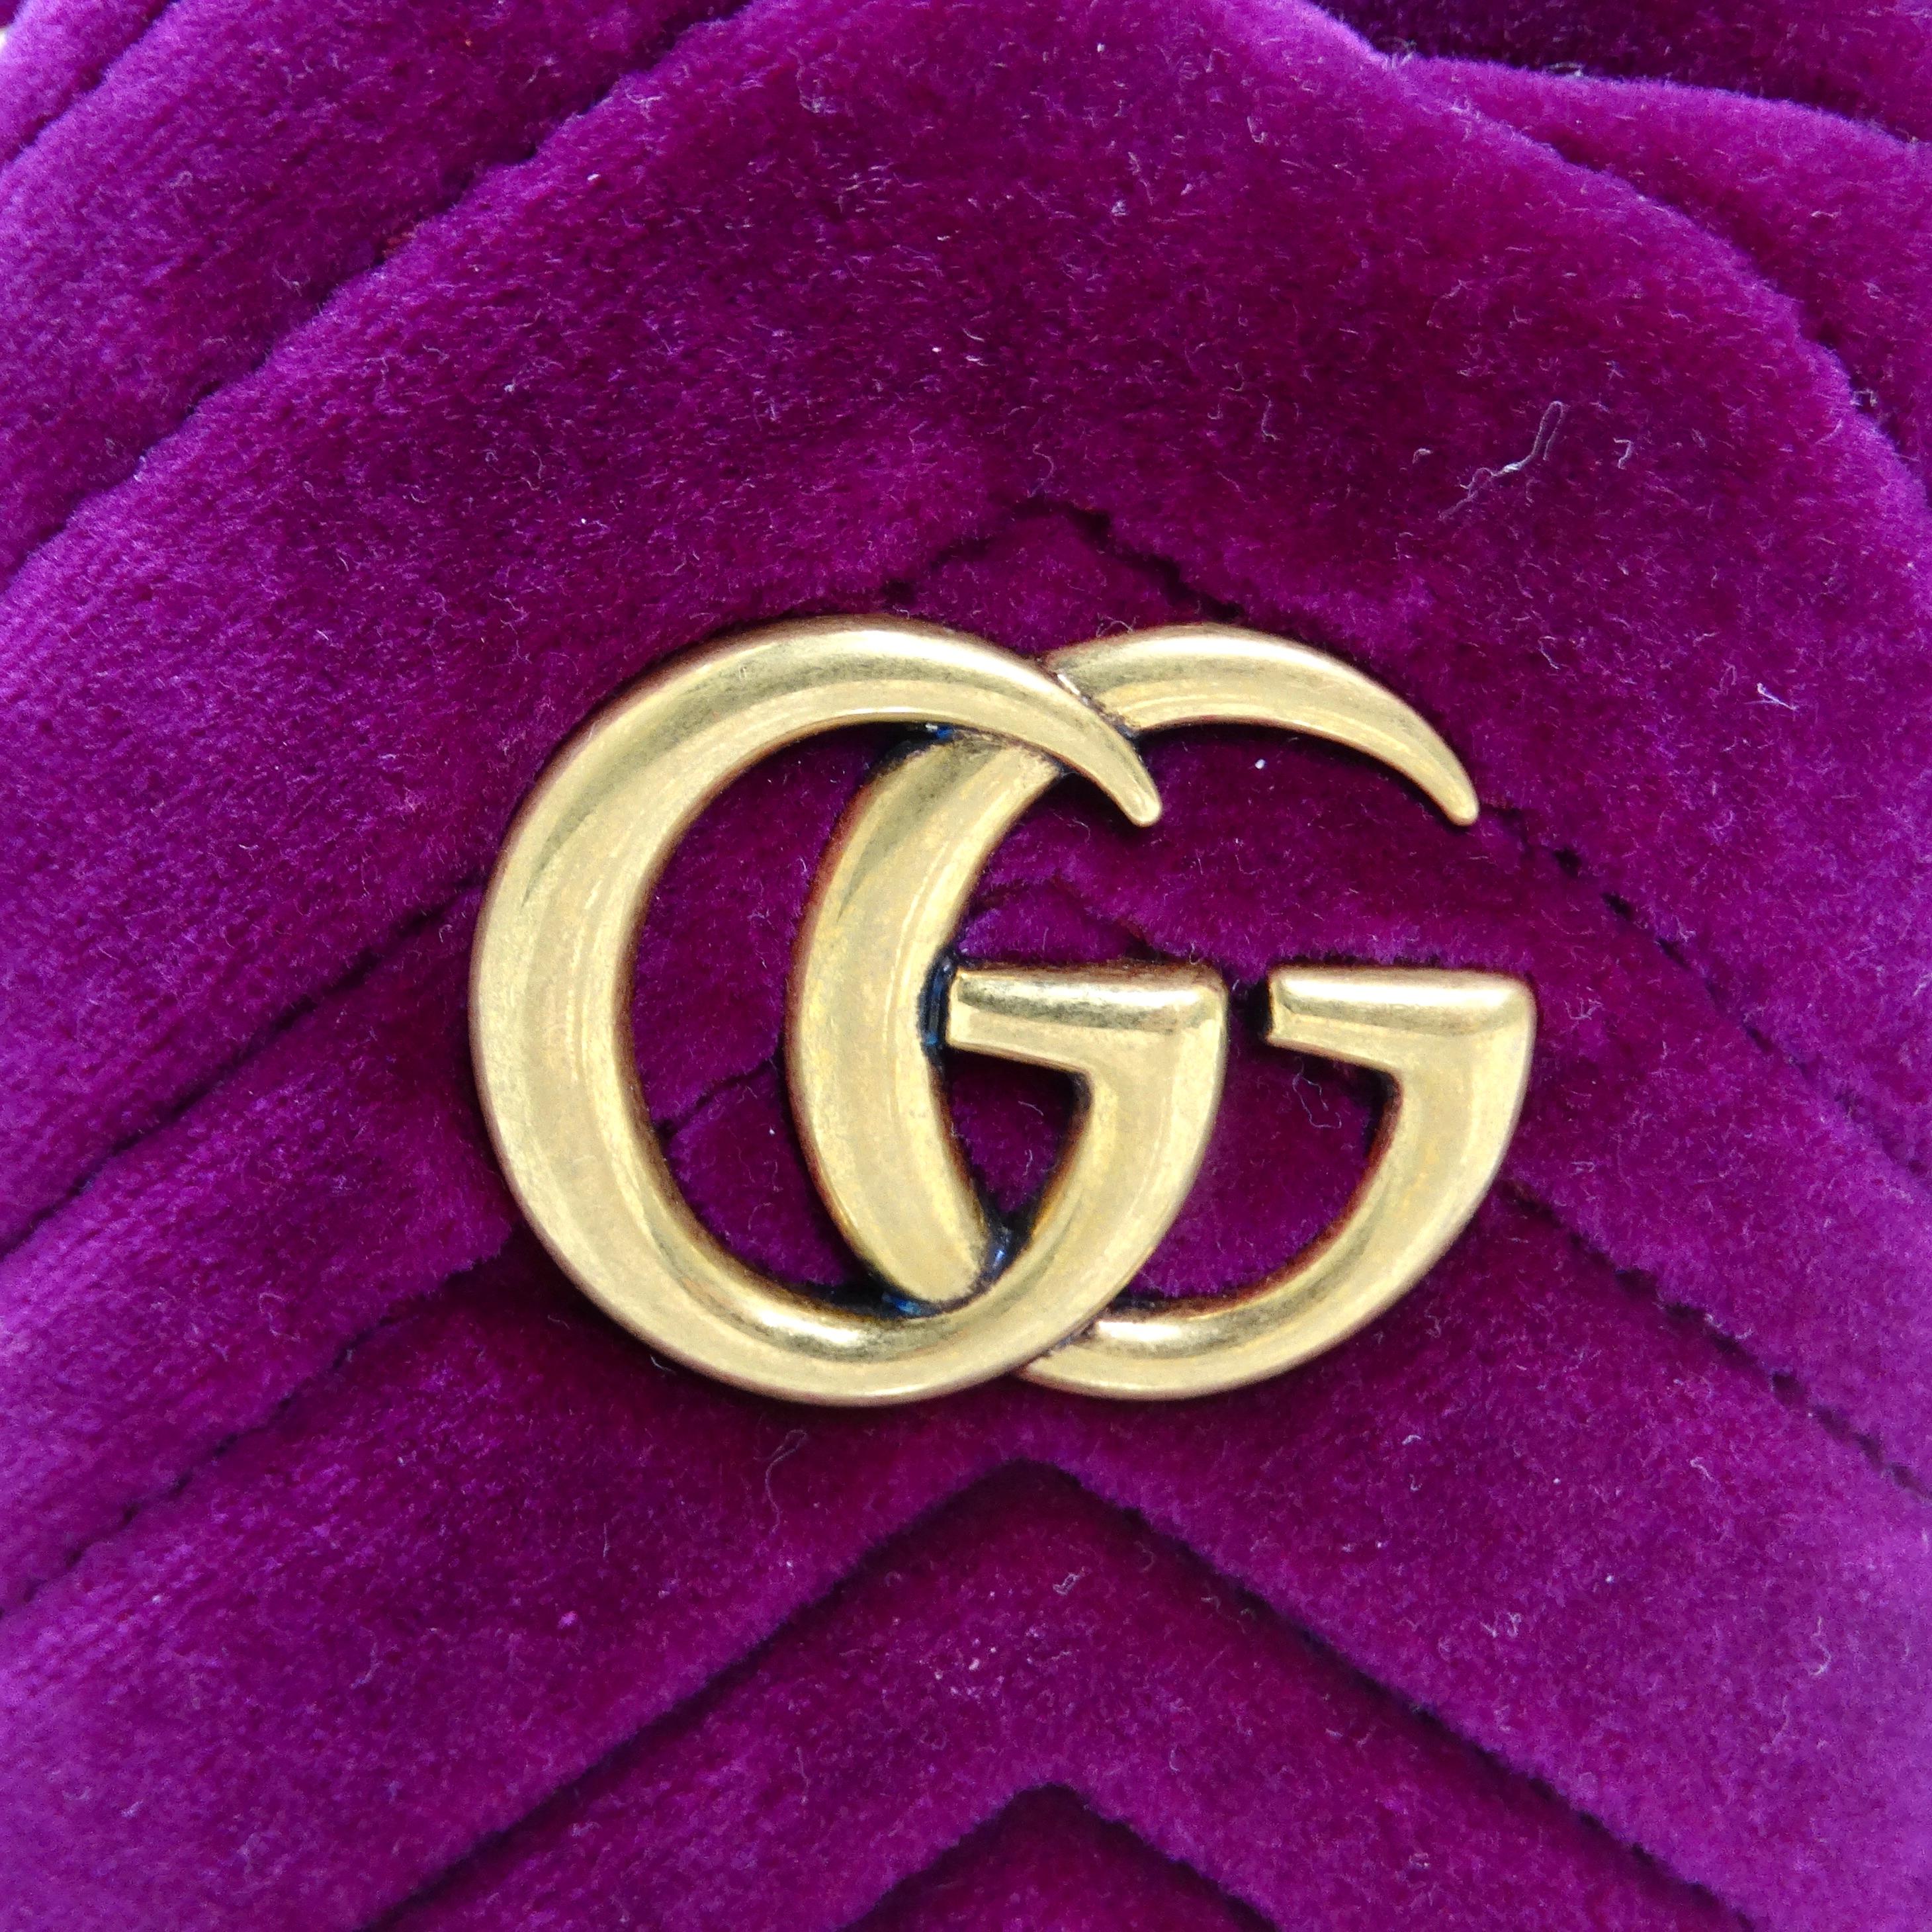 Voici le mini sac à dos en velours GG Marmont de Gucci, un accessoire luxueux et stylé qui respire la sophistication et l'élégance. Confectionné en velours doux dans une riche teinte violet framboise, ce sac à bandoulière est une pièce d'apparat qui